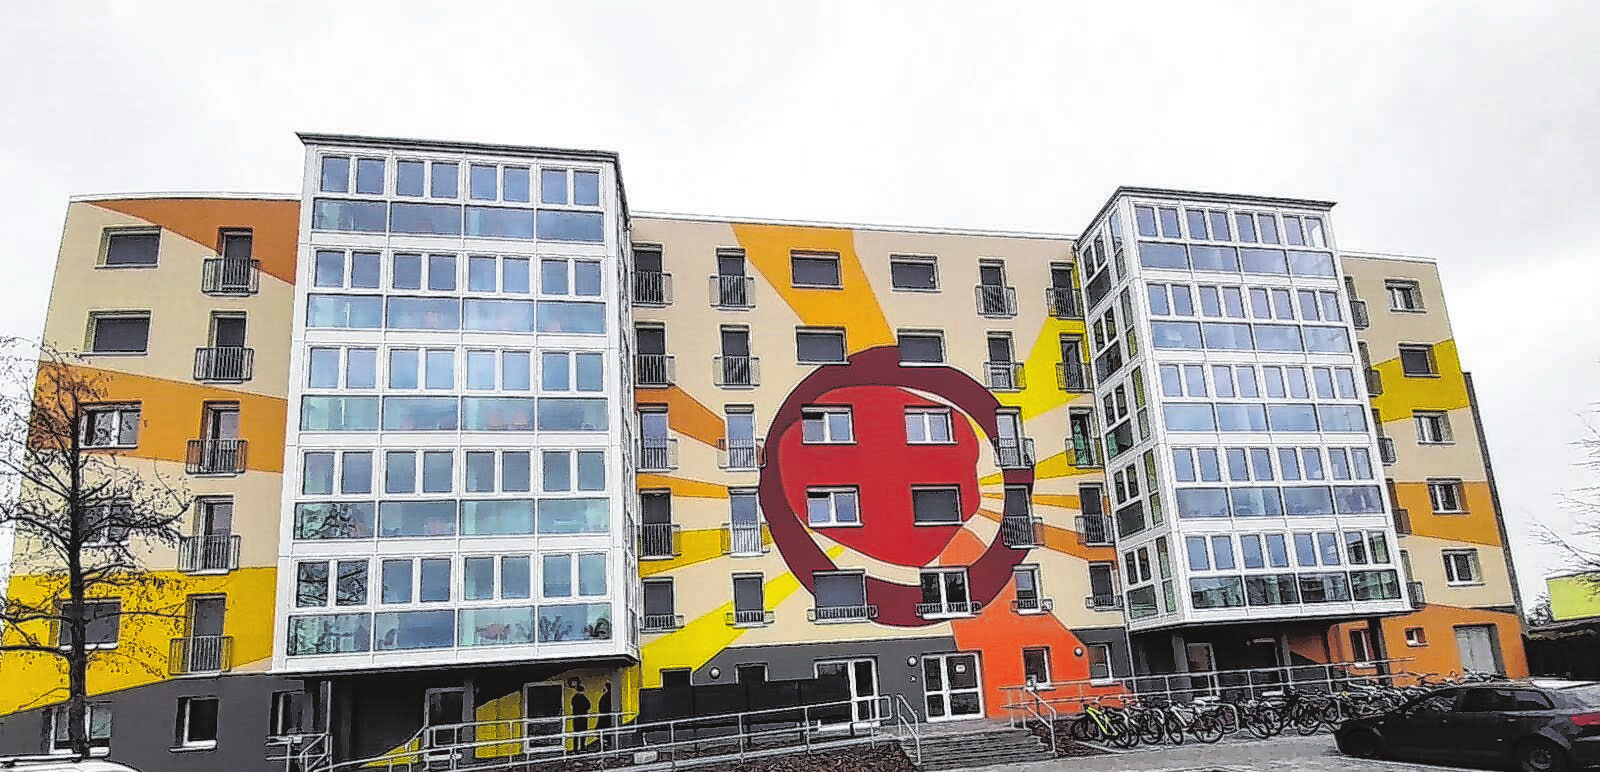 Die Fassade in der Flemsdorfer Straße in Schwedt wurde im letzten Jahr hergerichtet. Fotos (2): Drei Schilde